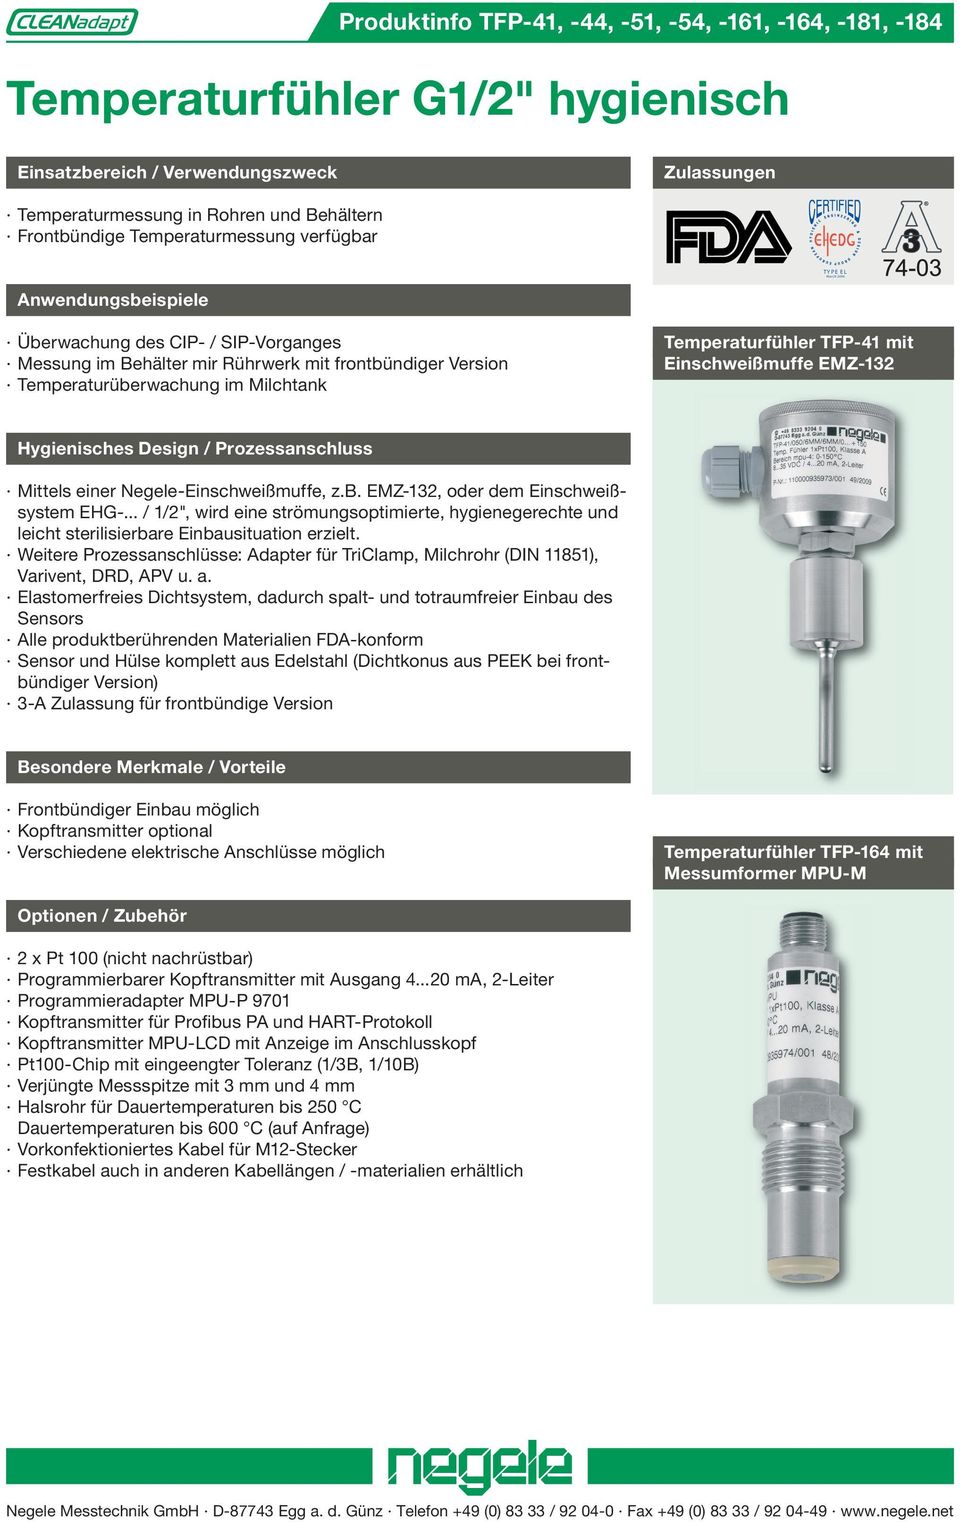 Temperaturfühler TFP-41 mit Einschweißmuffe EMZ-13 Hygienisches Design / Prozessanschluss Mittels einer Negele-Einschweißmuffe, z.b. EMZ-132, oder dem Einschweißsystem EHG-.